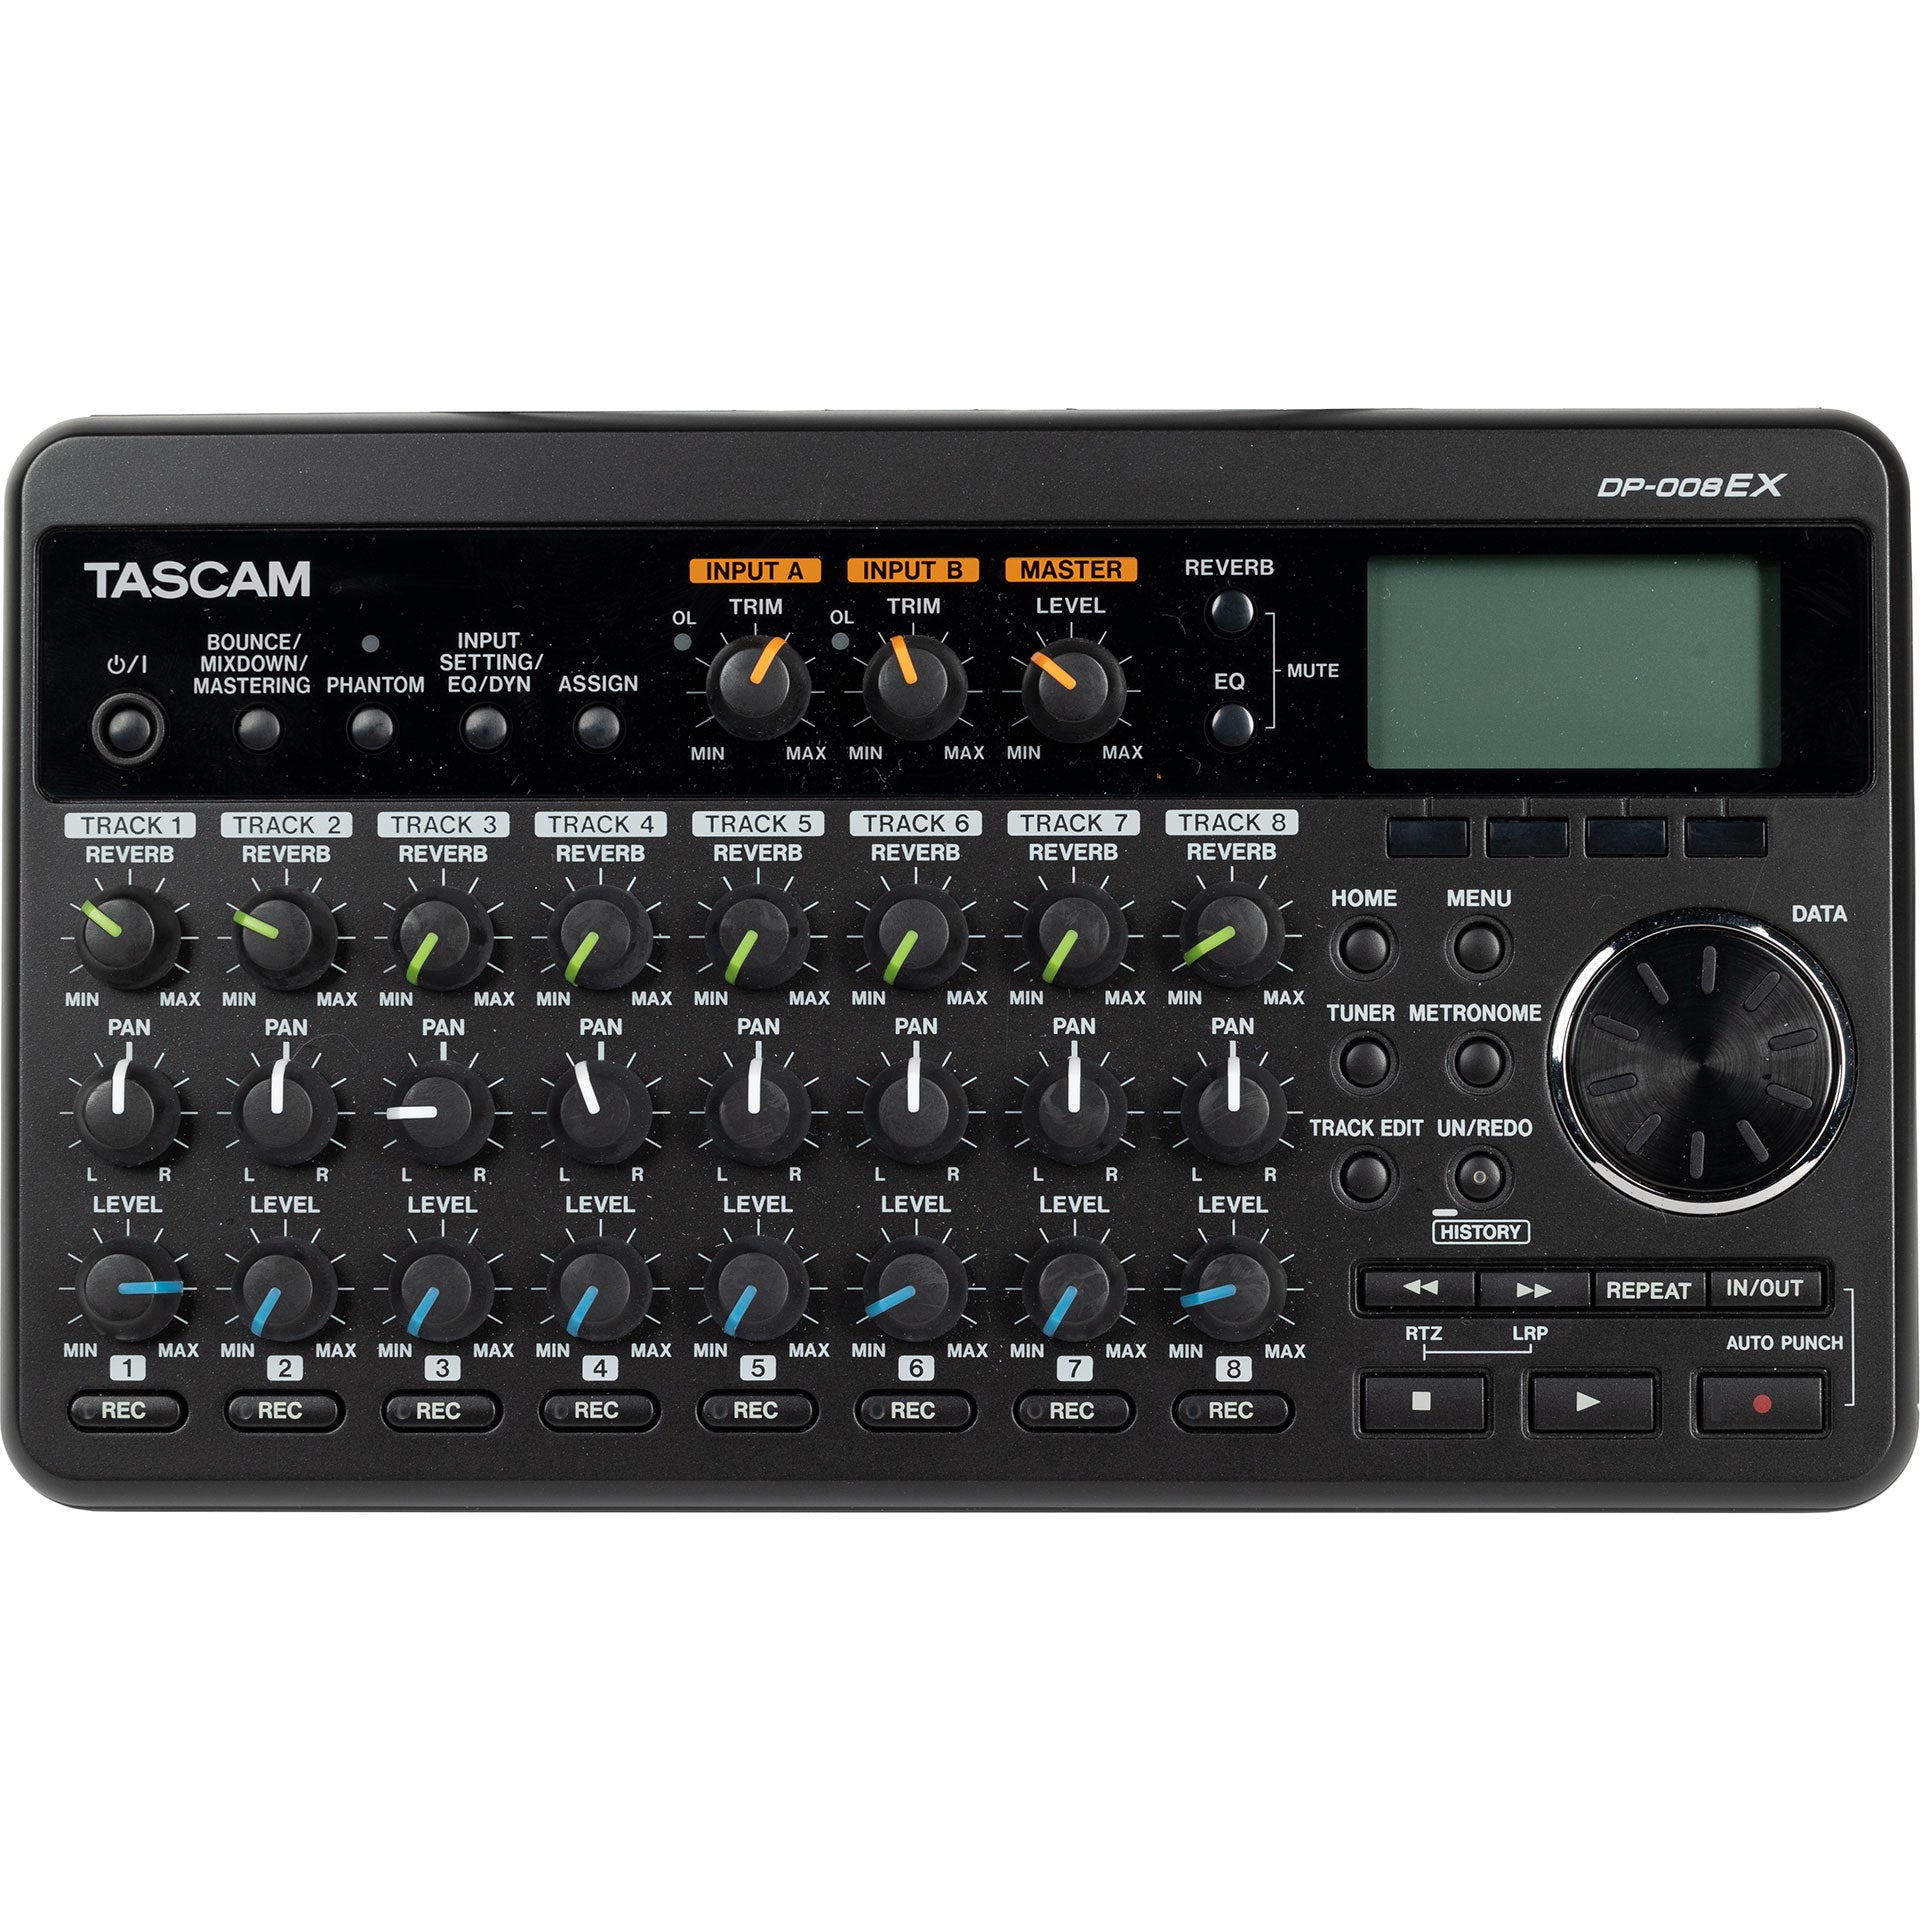 Tascam DP-008EX 8-Track Digital Pocketstudio Multi-Track Audio